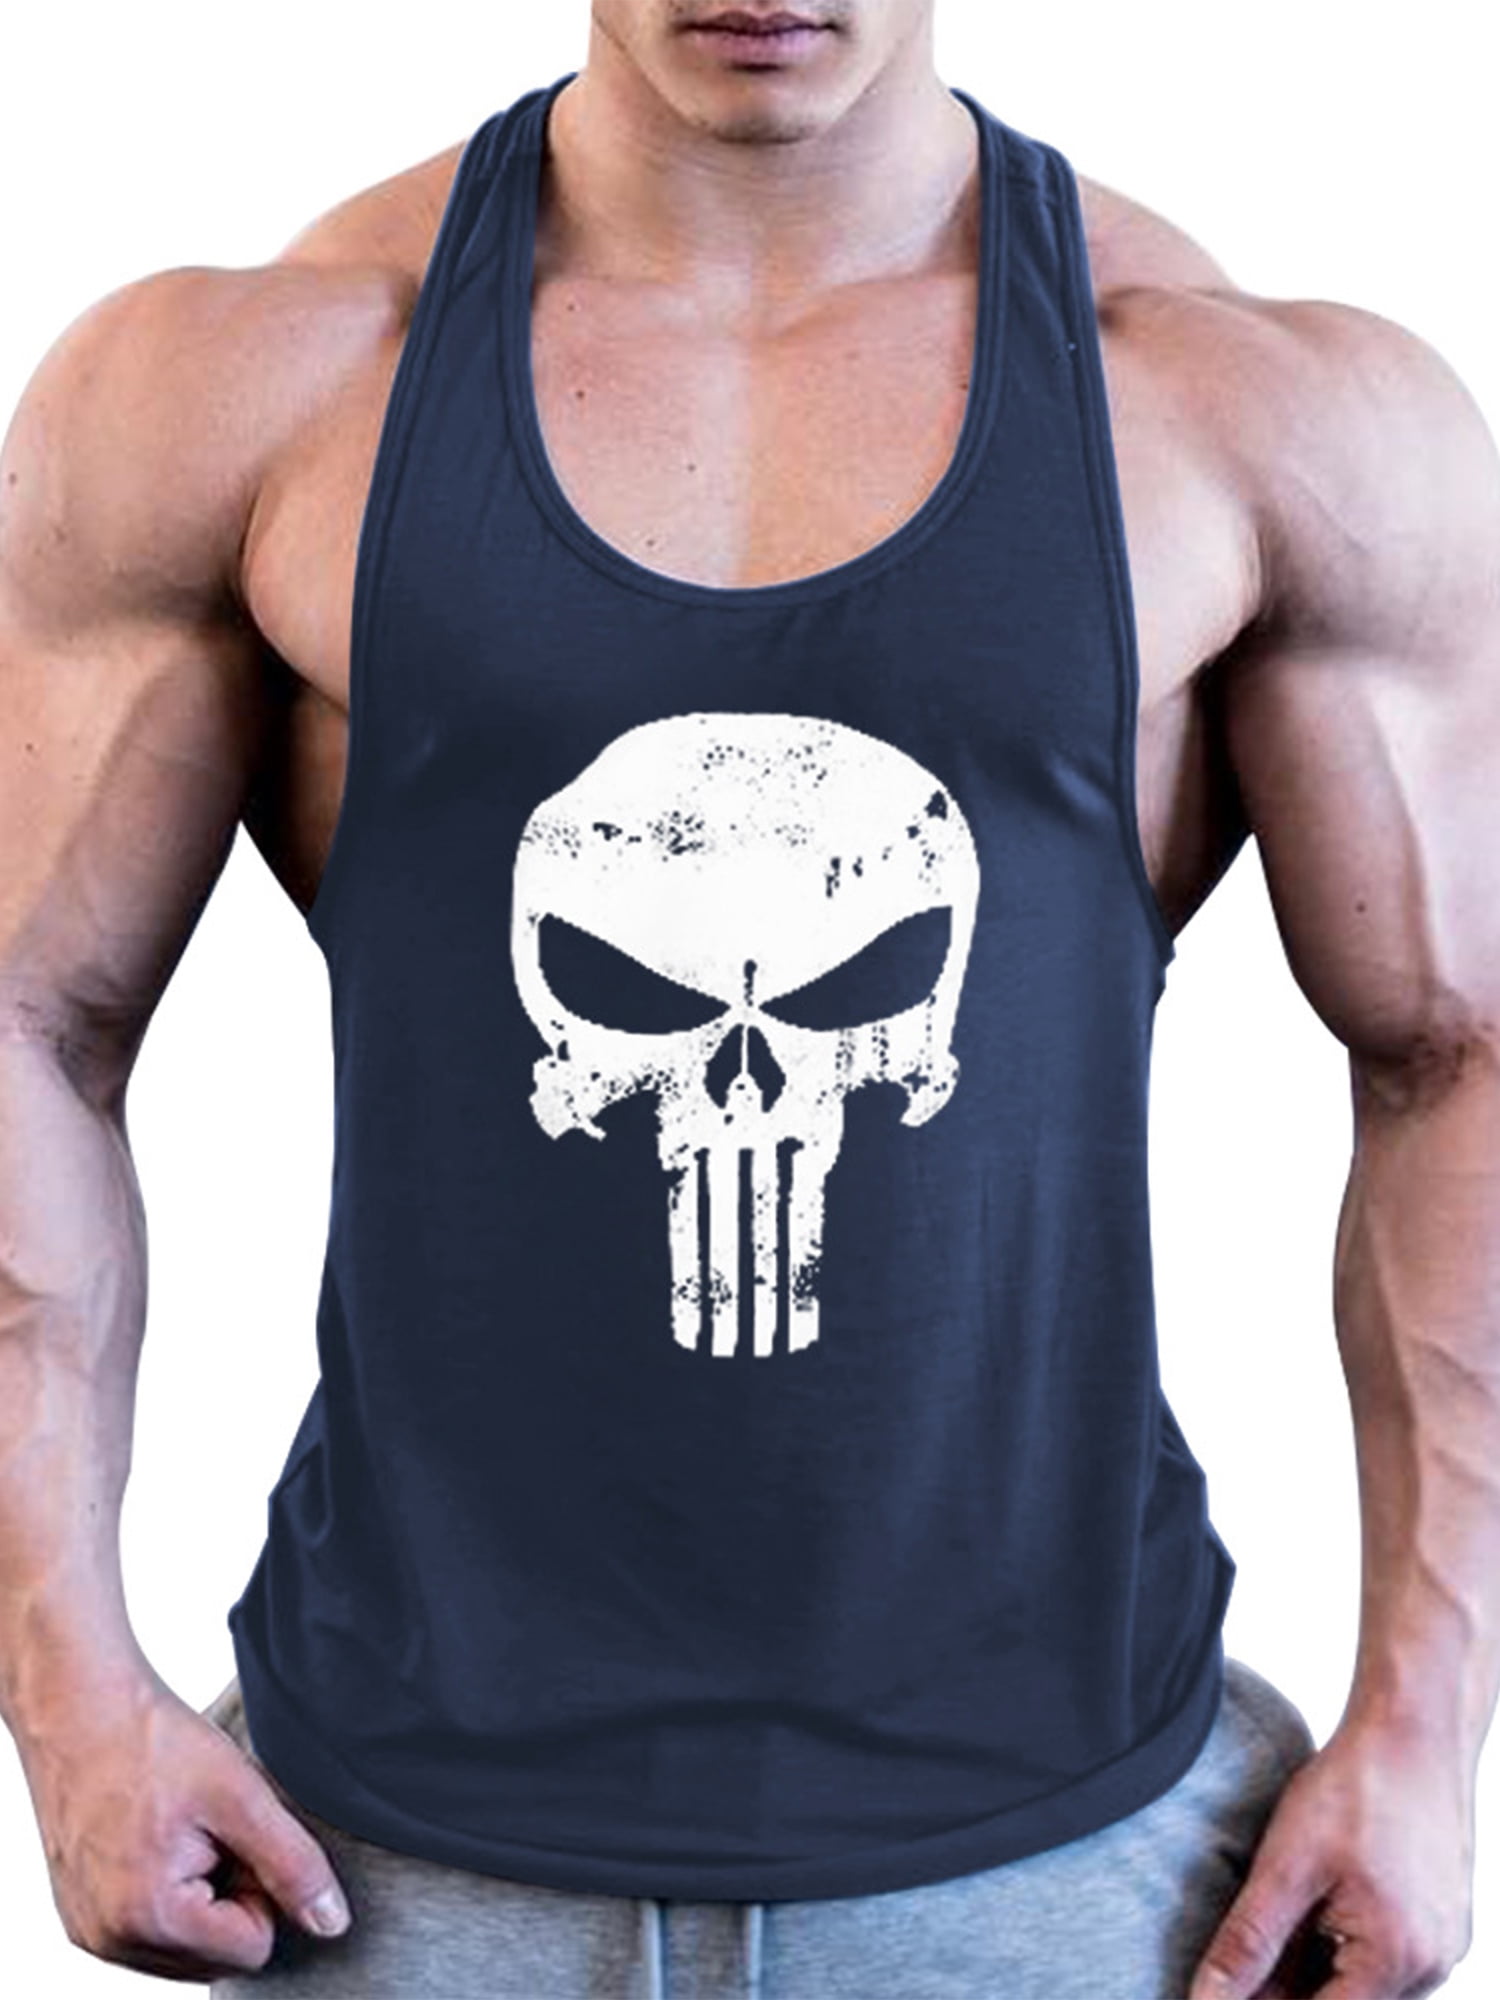 Men vests 100% Cotton Vest Tank Top Gym And Training Top S M L XL XXL 